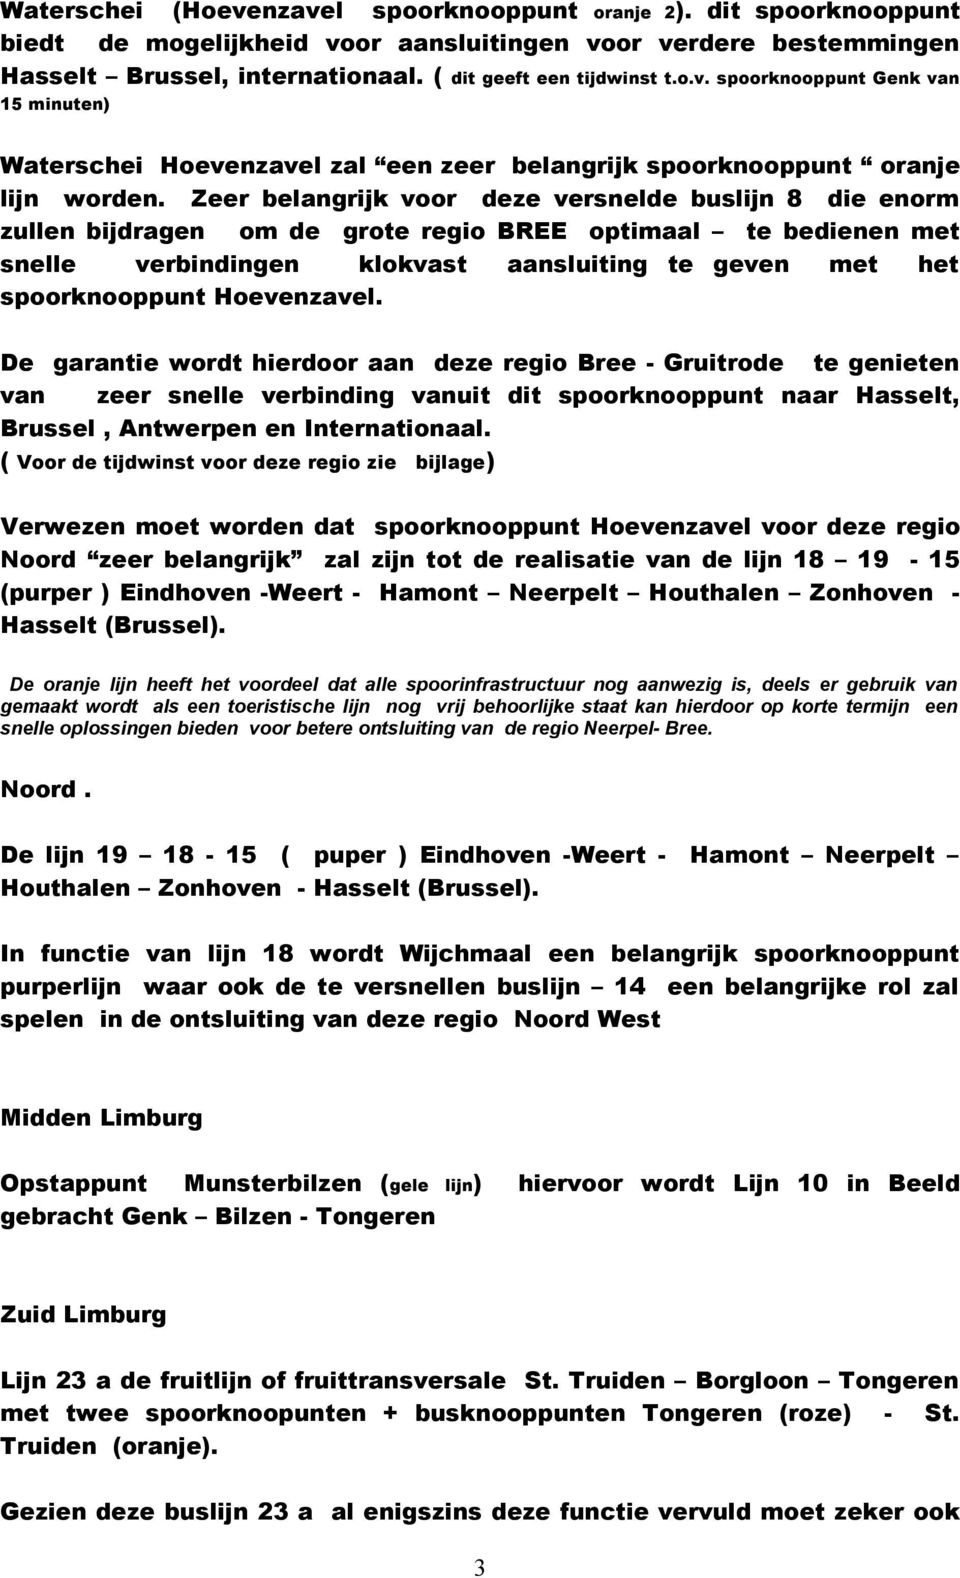 Hoevenzavel. De garantie wordt hierdoor aan deze regio Bree - Gruitrode te genieten van zeer snelle verbinding vanuit dit spoorknooppunt naar Hasselt, Brussel, Antwerpen en Internationaal.